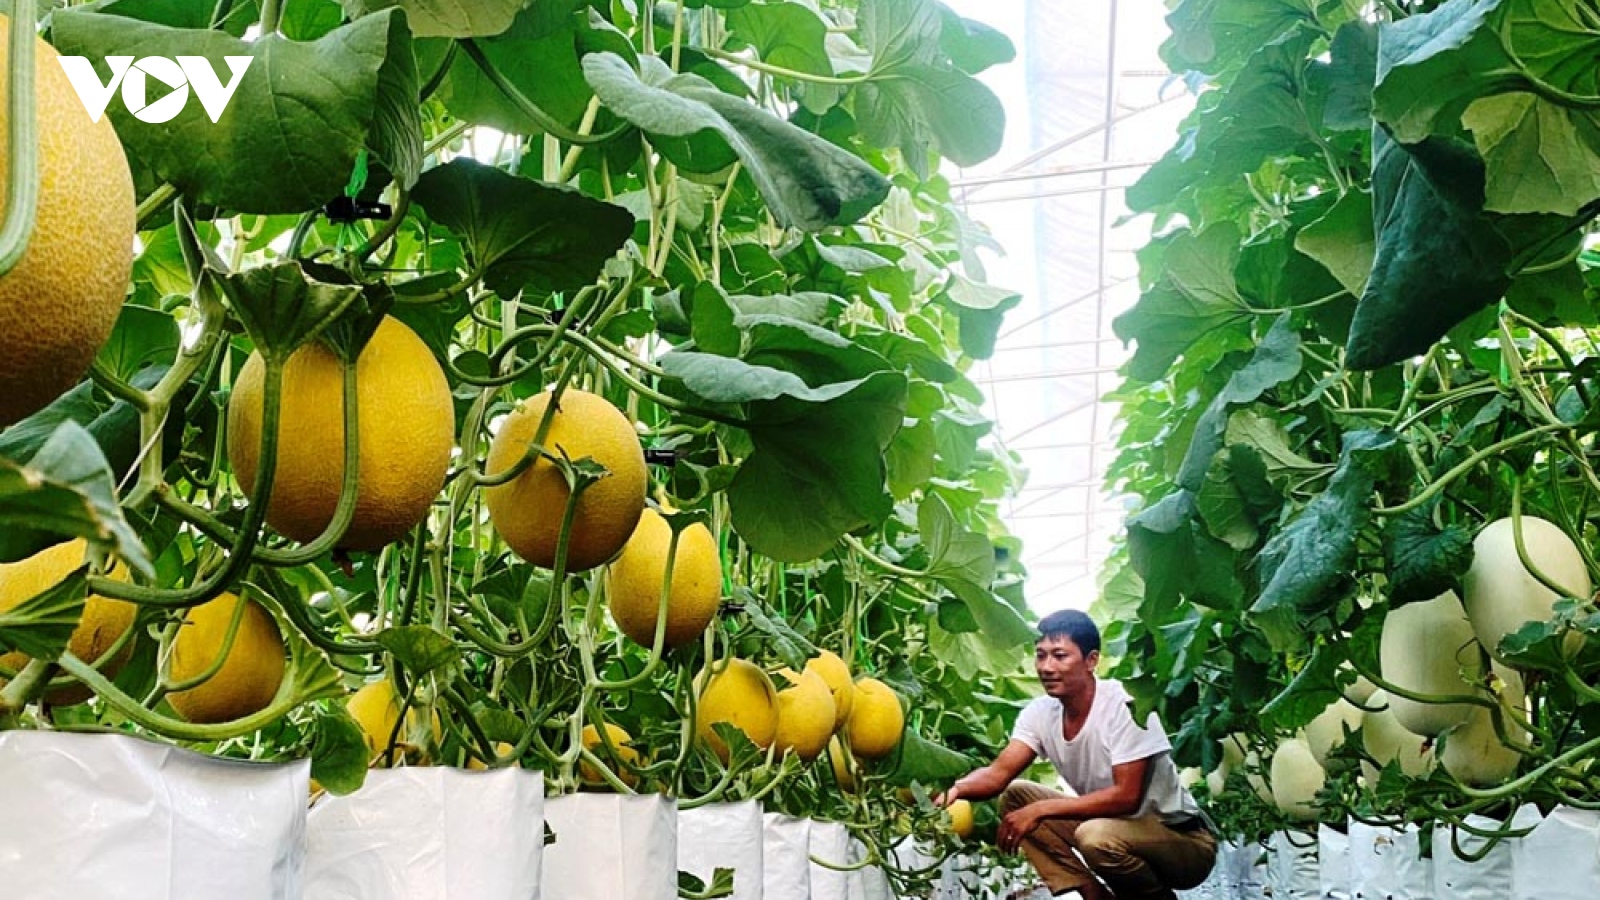 Sản xuất nông nghiệp nhà lưới, nhà màng, hướng phát triển bền vững tại Lai Châu